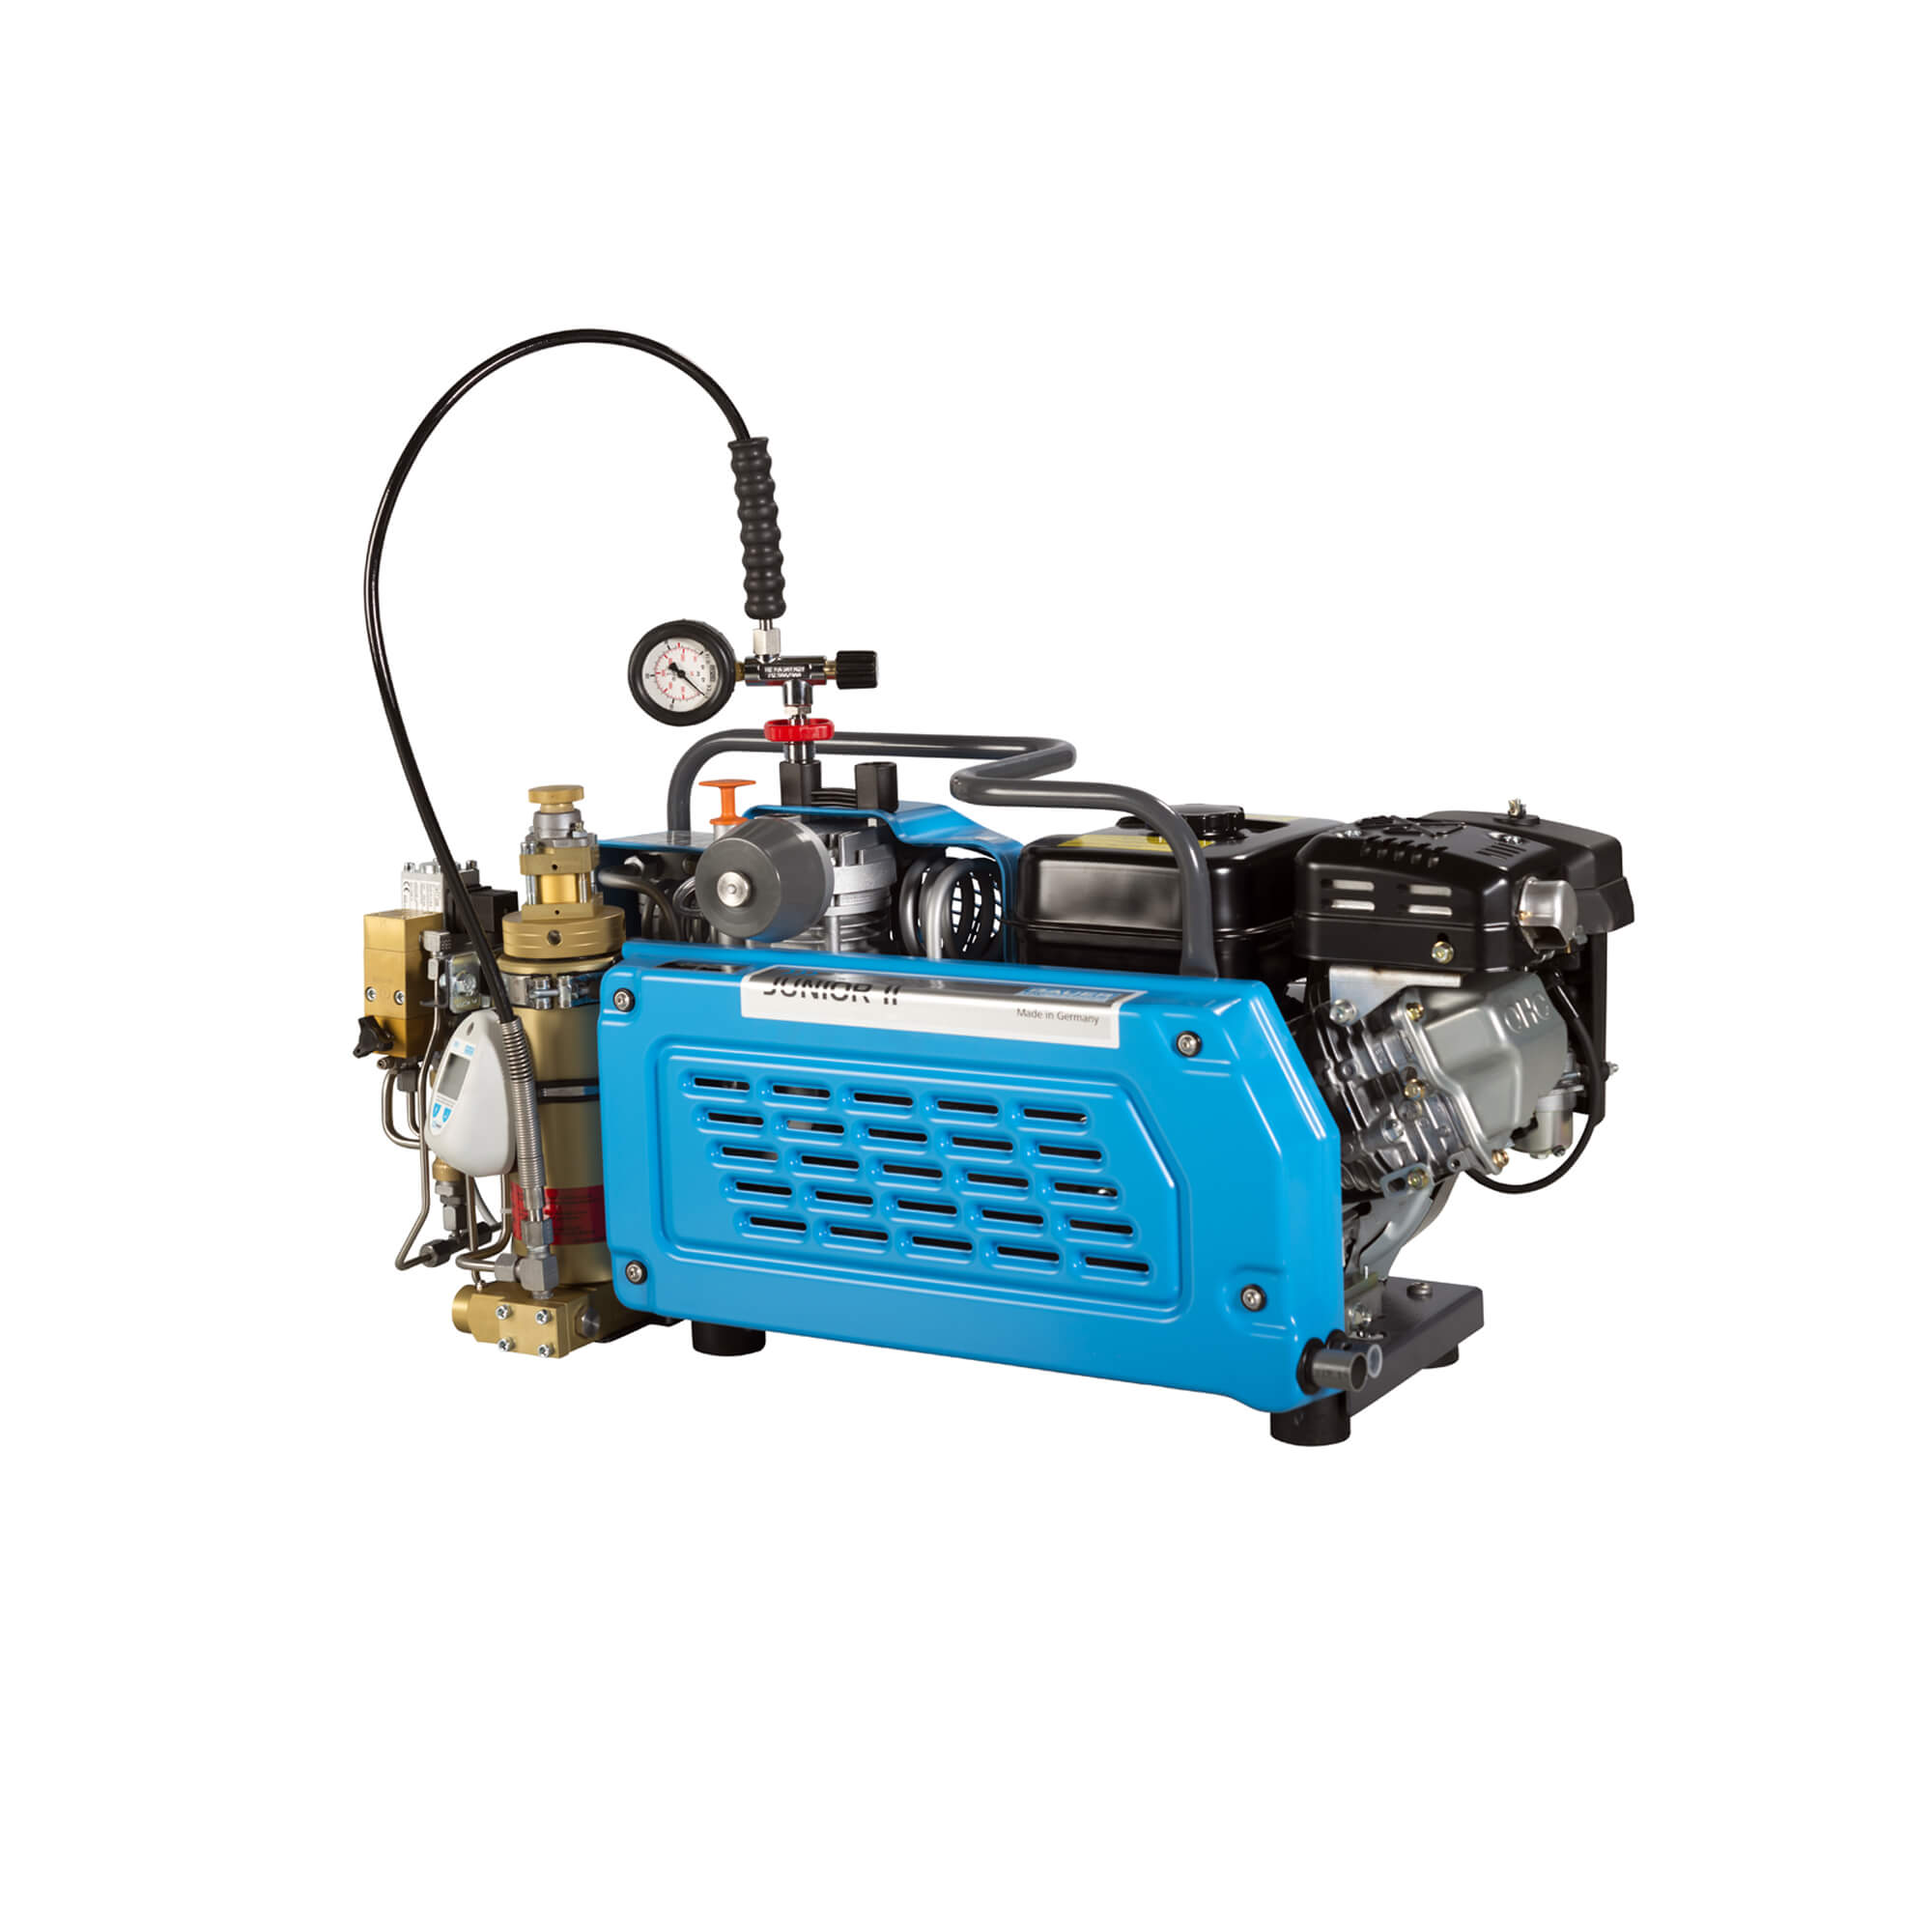 High-pressure Compressor Junior II